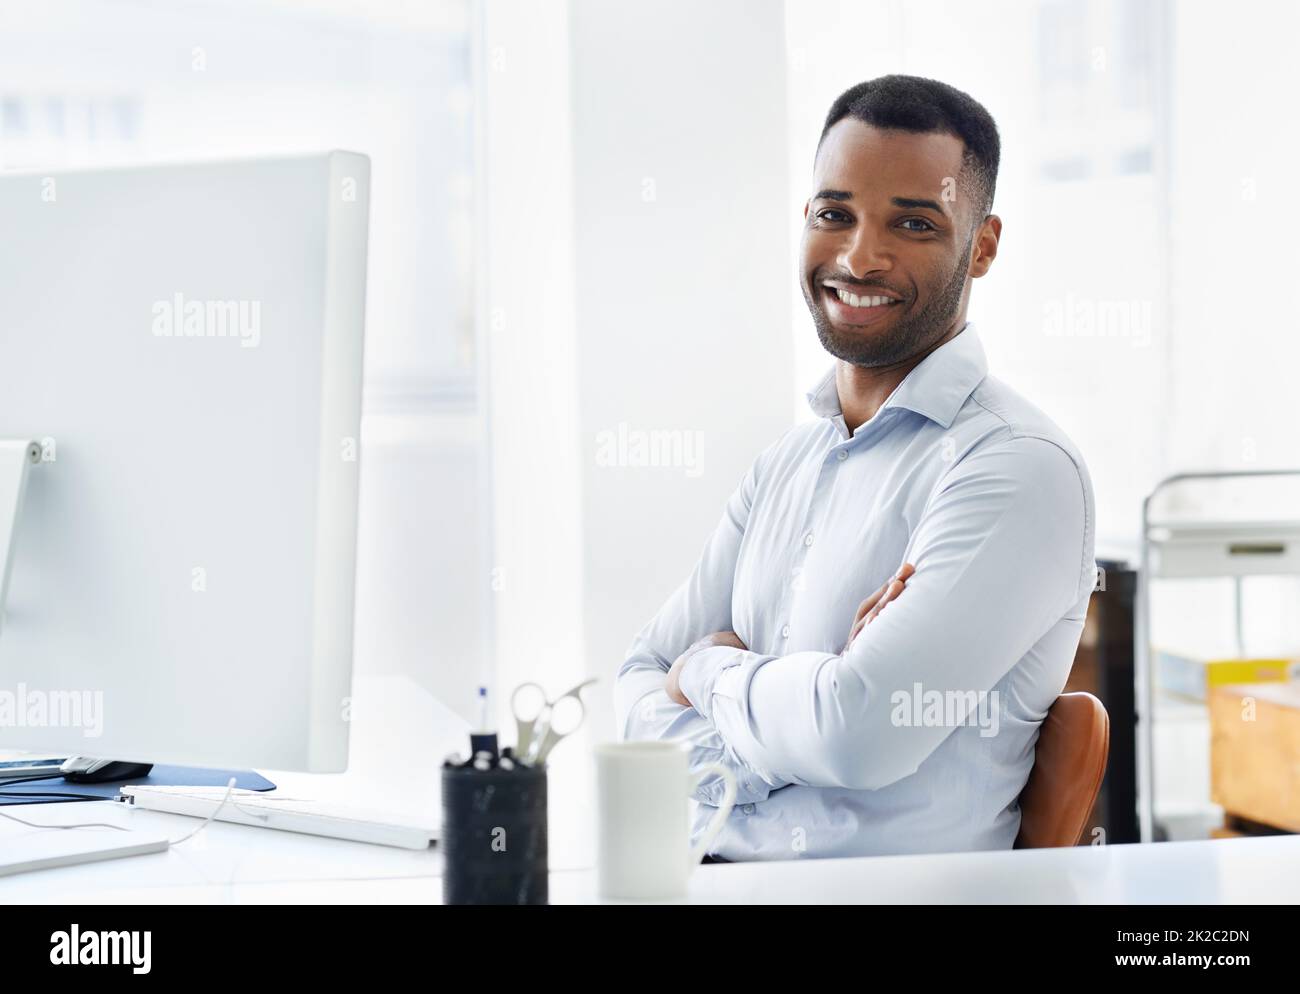 HES zuversichtlich in seine Karriere. Ein hübscher junger afroamerikanischer Geschäftsmann, der an seinem Schreibtisch arbeitet. Stockfoto